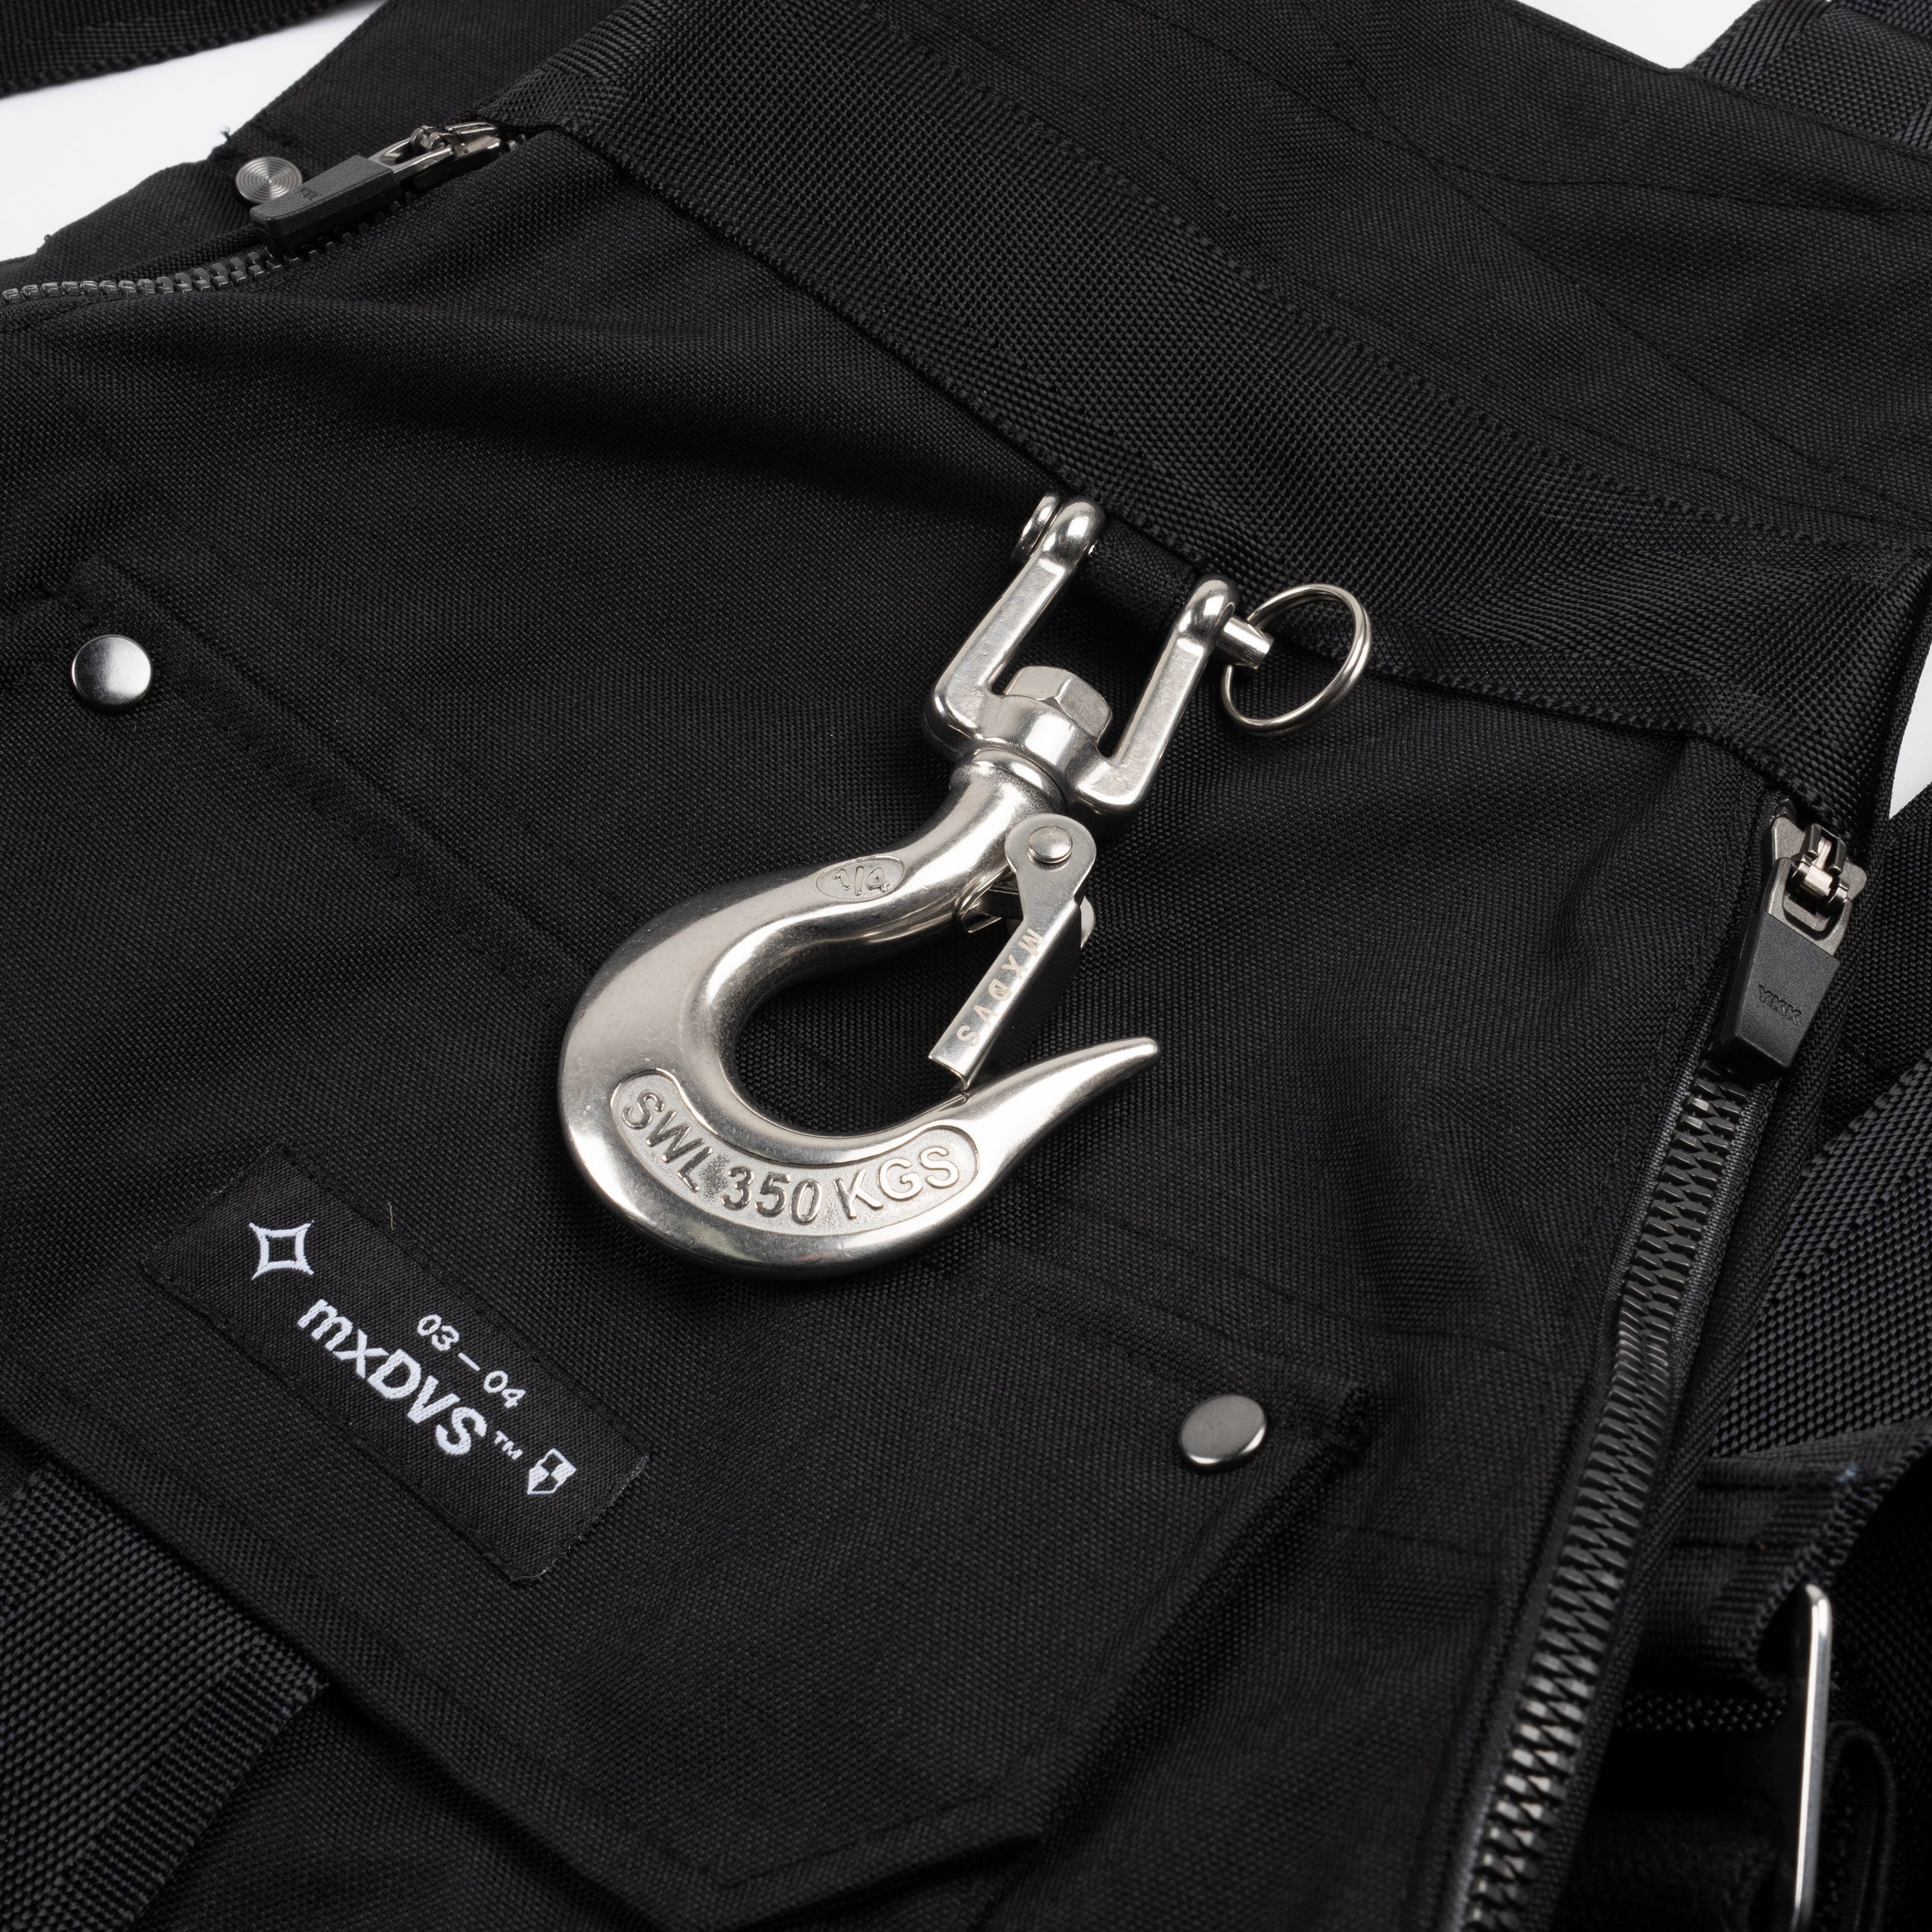 Stepney Workers Club MXDVS Vest Black WM-K201-S24